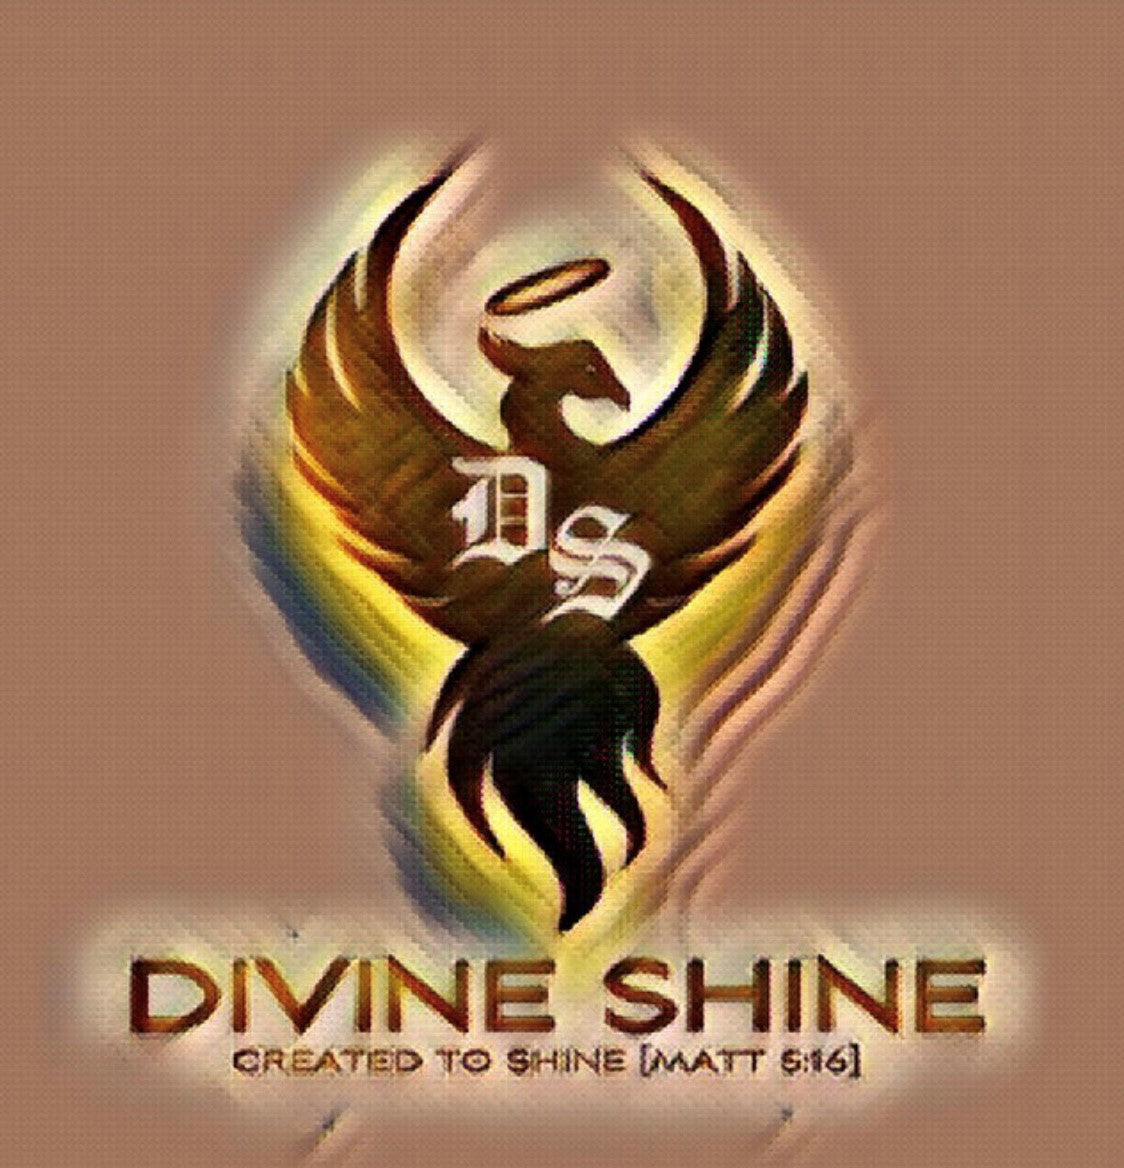 It's Divine Shine